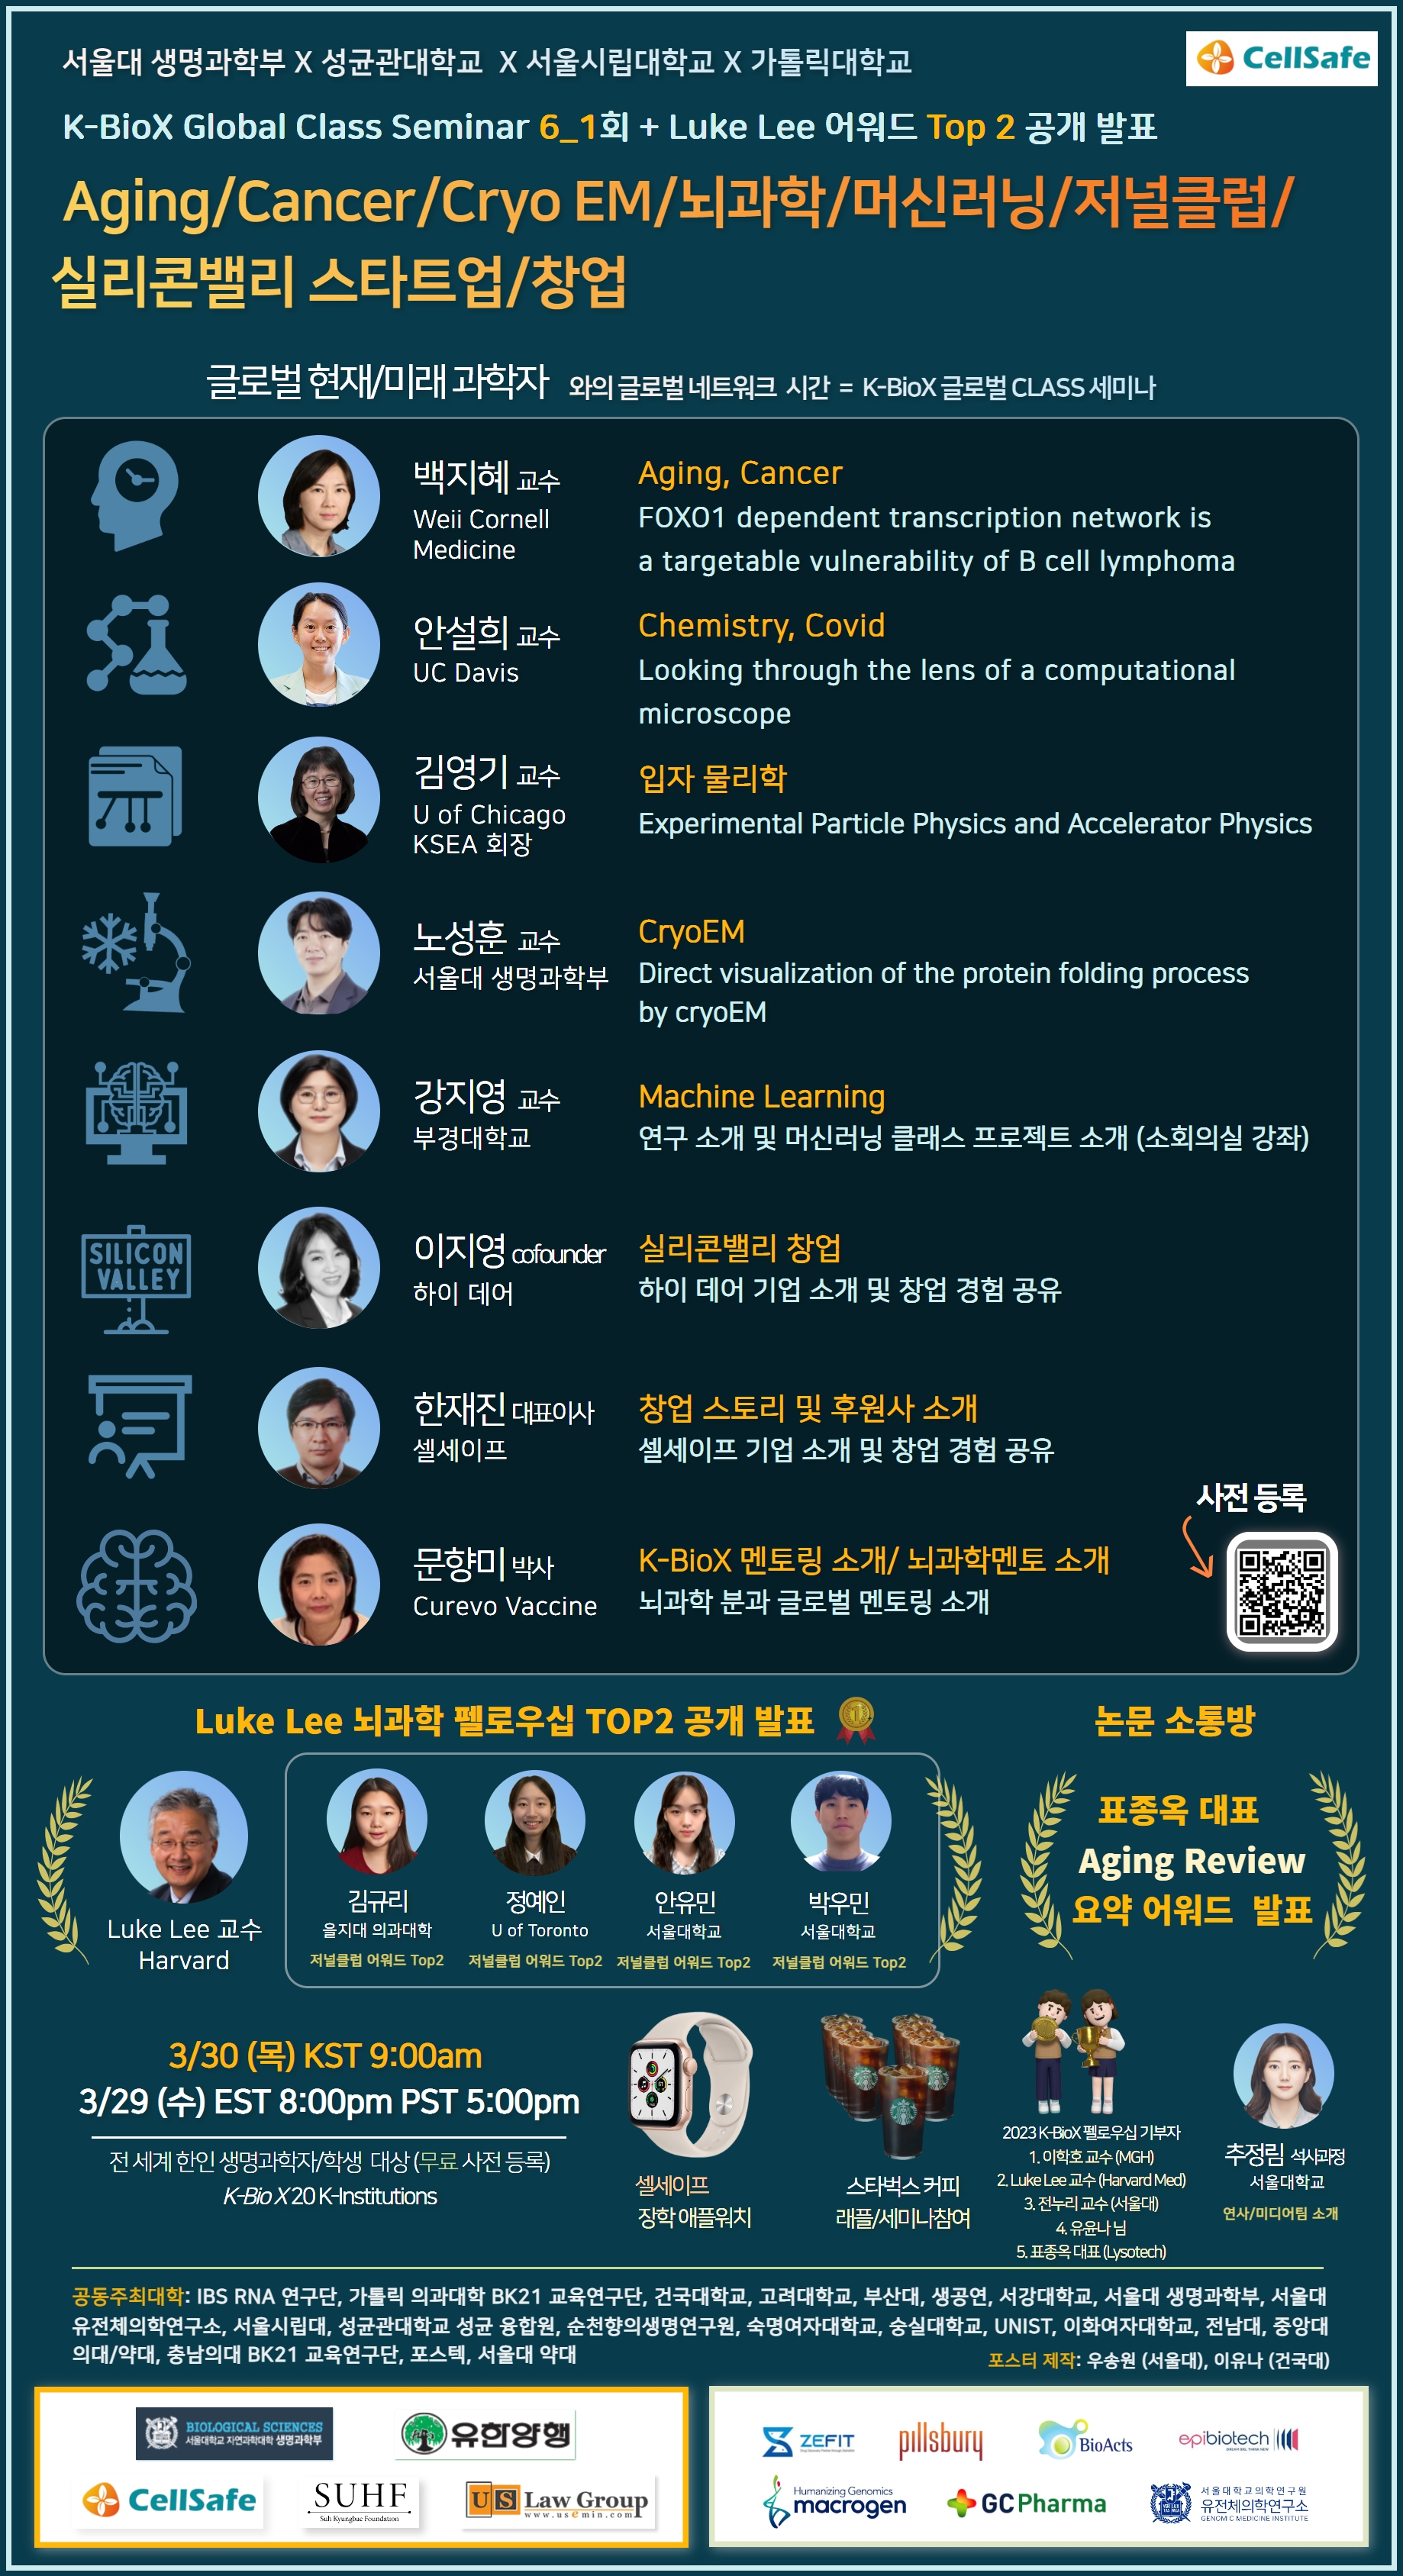 [성균융합원] 2023-1 K-BioX Global Class Seminar Season 6 제1회 세미나 안내(3/30(목) 9:00)